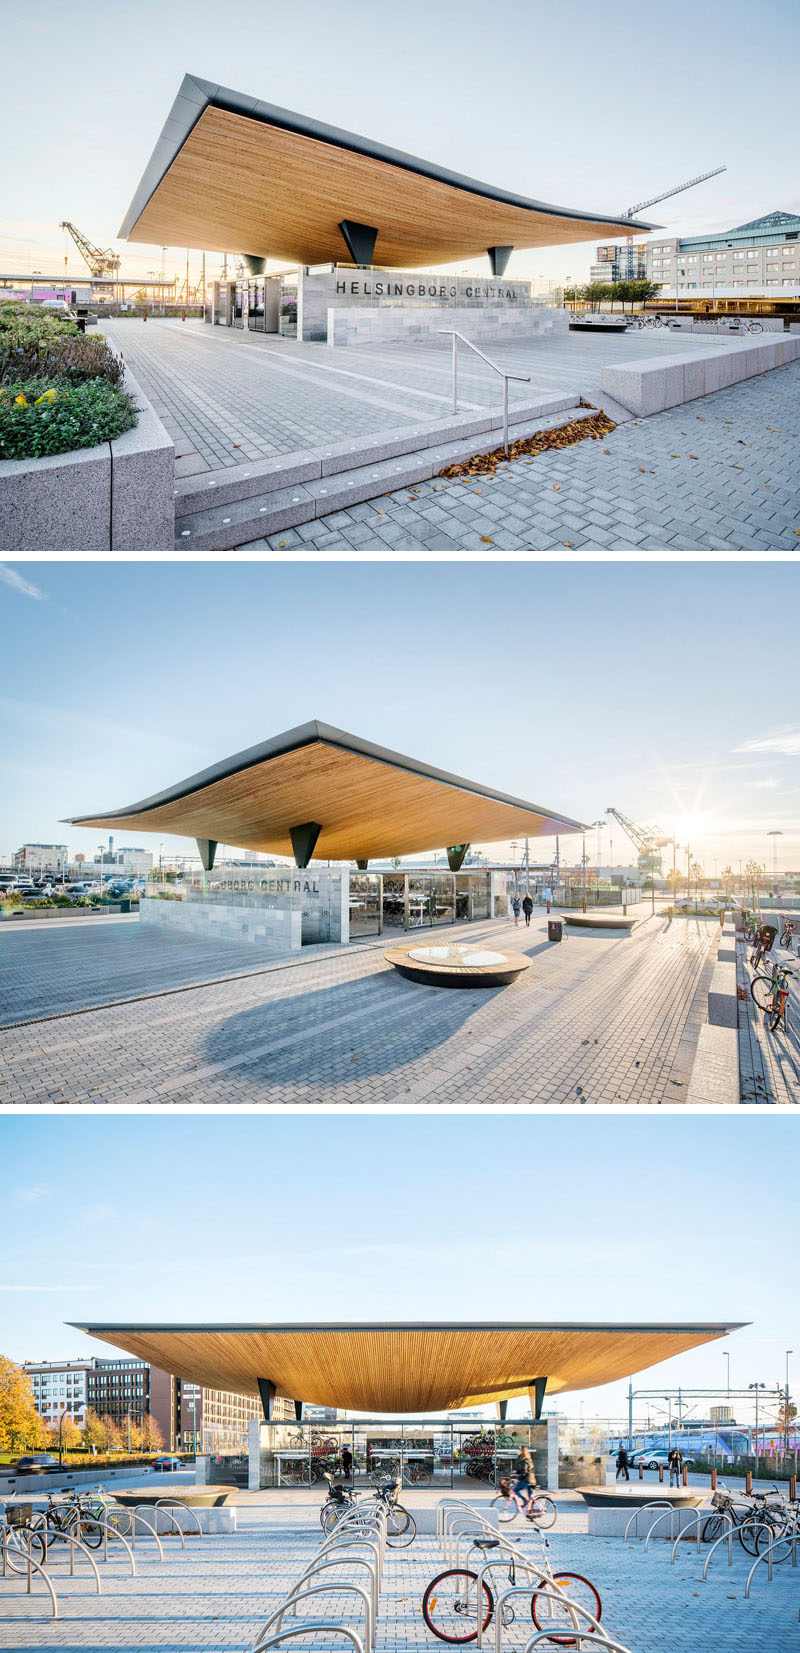 Этот шведский вокзал имеет скульптурную деревянную крышу, расположенную на двух облицованных шифером стеновых плитах, простые стеклянные панели используются в качестве защиты от непогоды 